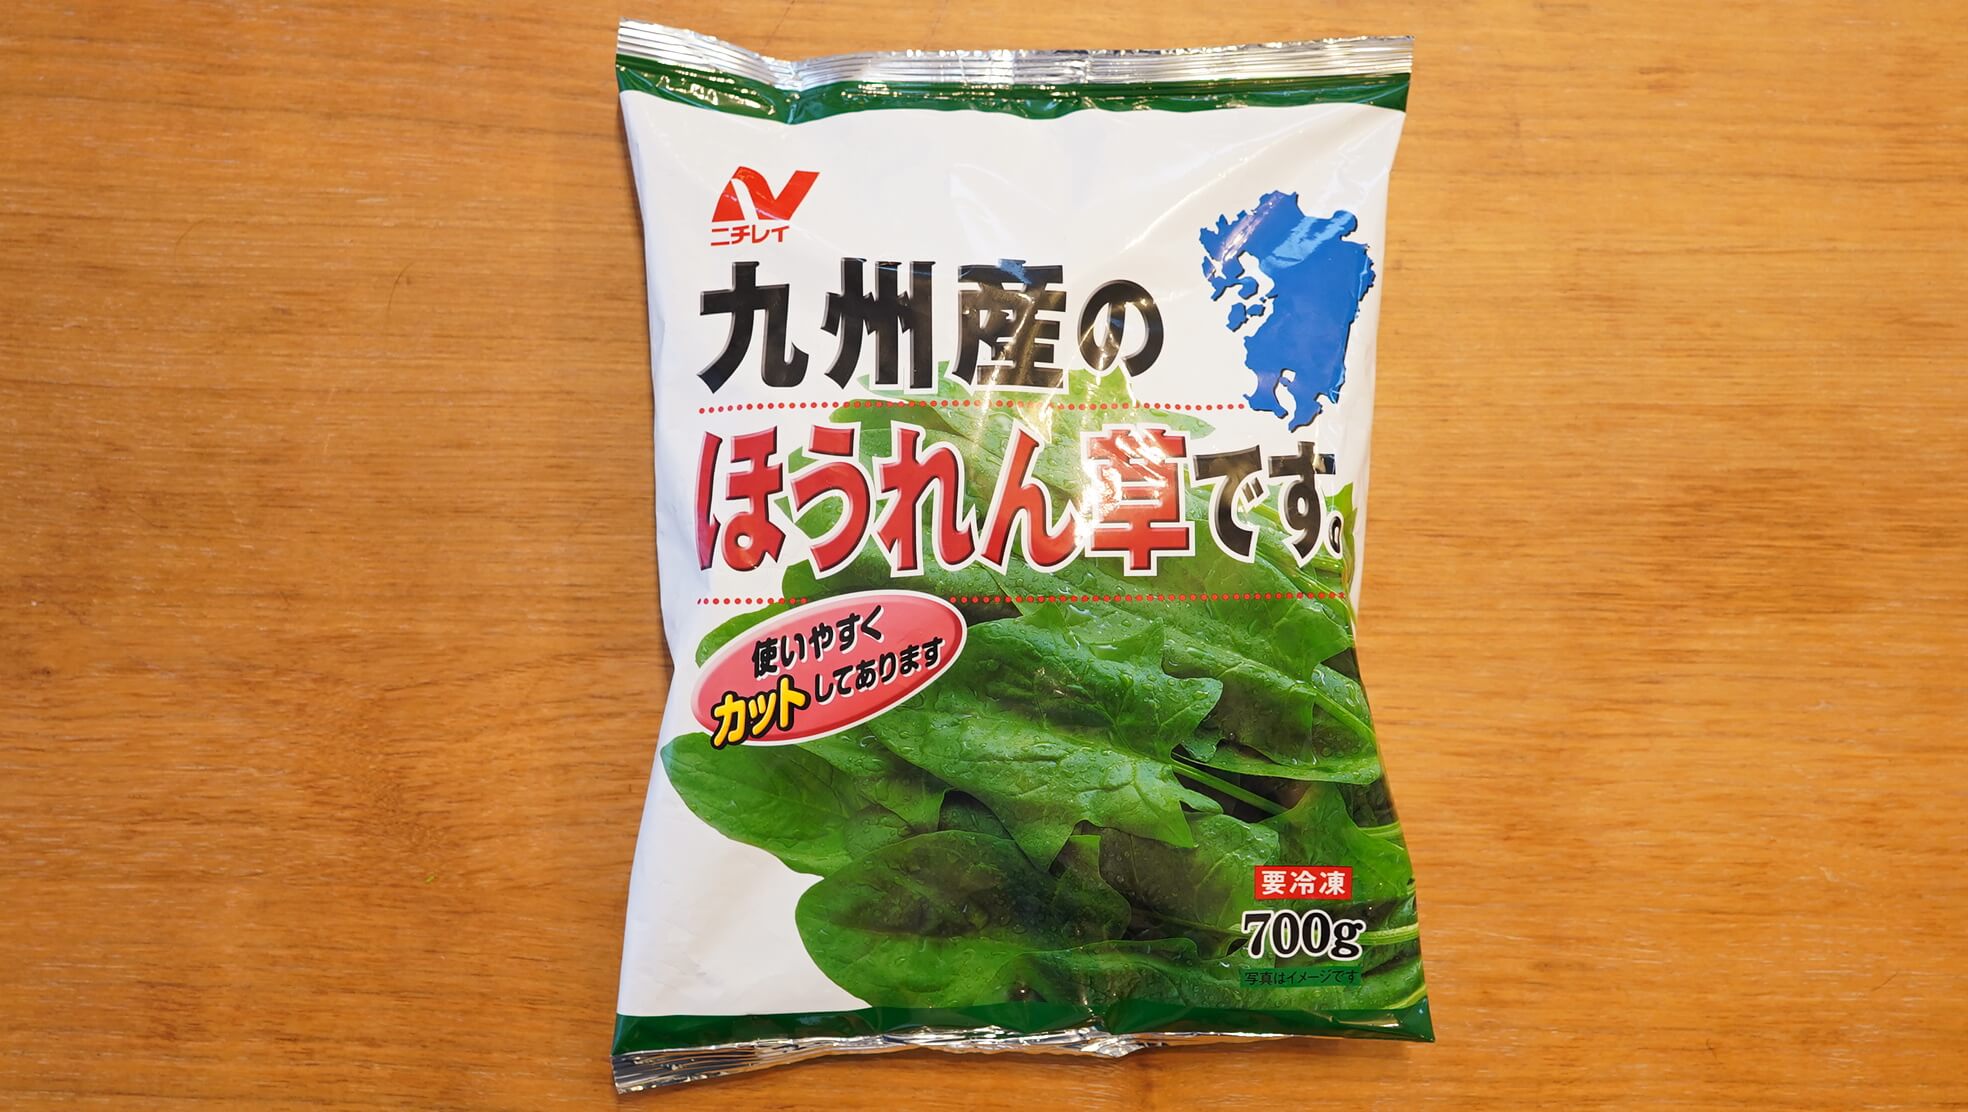 コストコの冷凍食品ニチレイ「九州産のほうれん草です。」のパッケージ写真